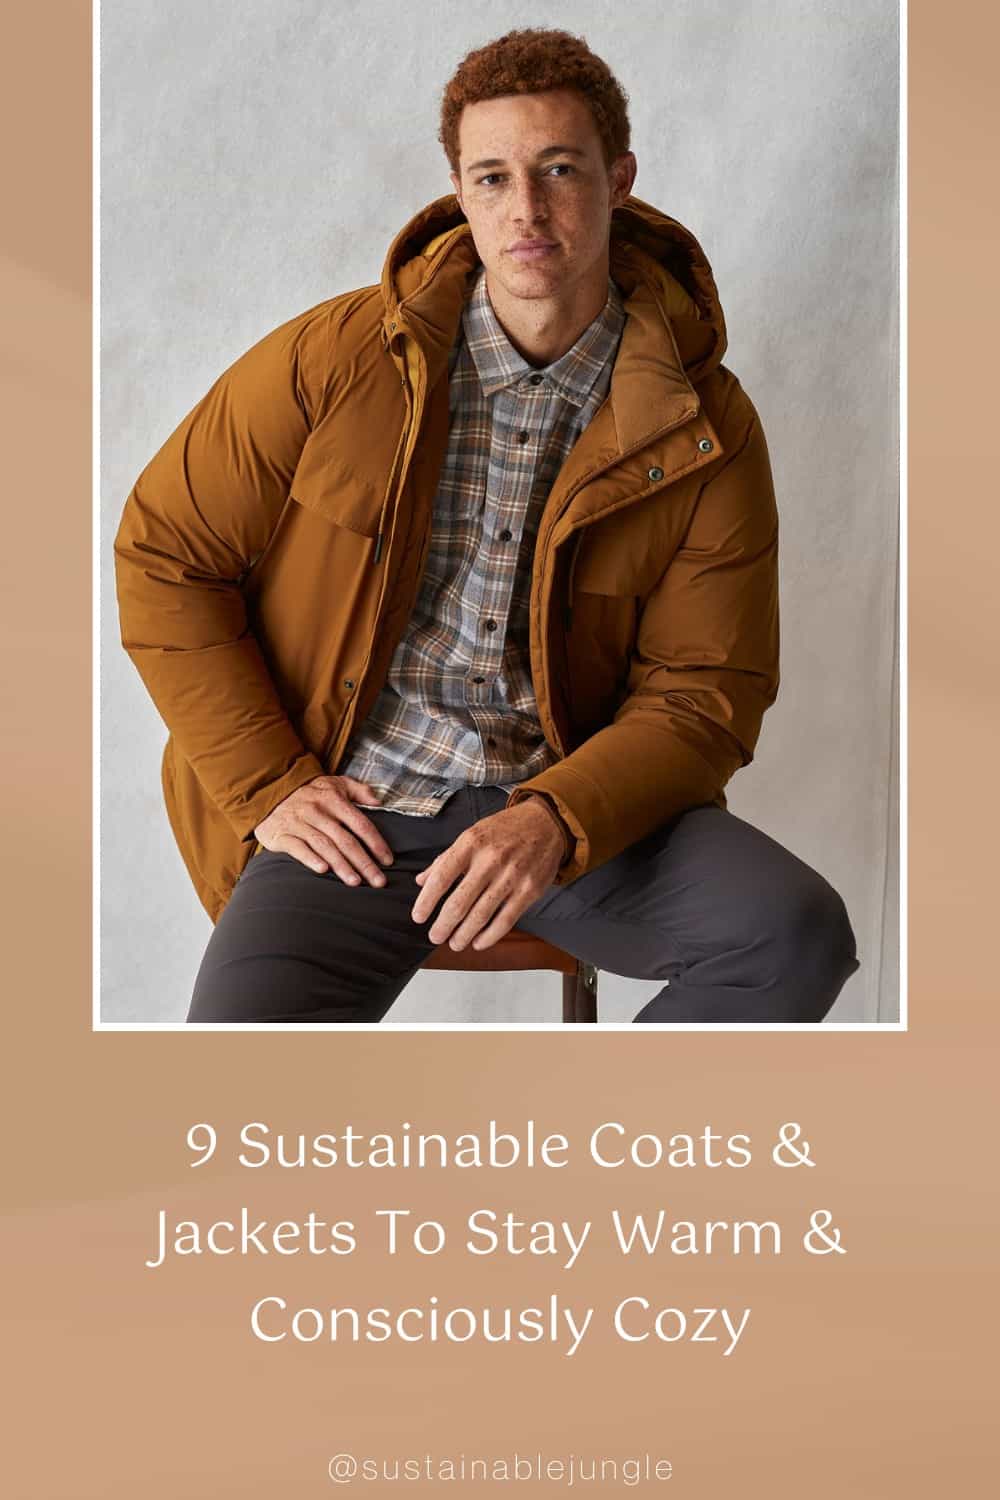 9可持续外套外套保暖舒适#可持续外套#可持续外套#可持续外套#道德外套#道德冬季外套#道德外套#可持续丛林图片来源:prAna